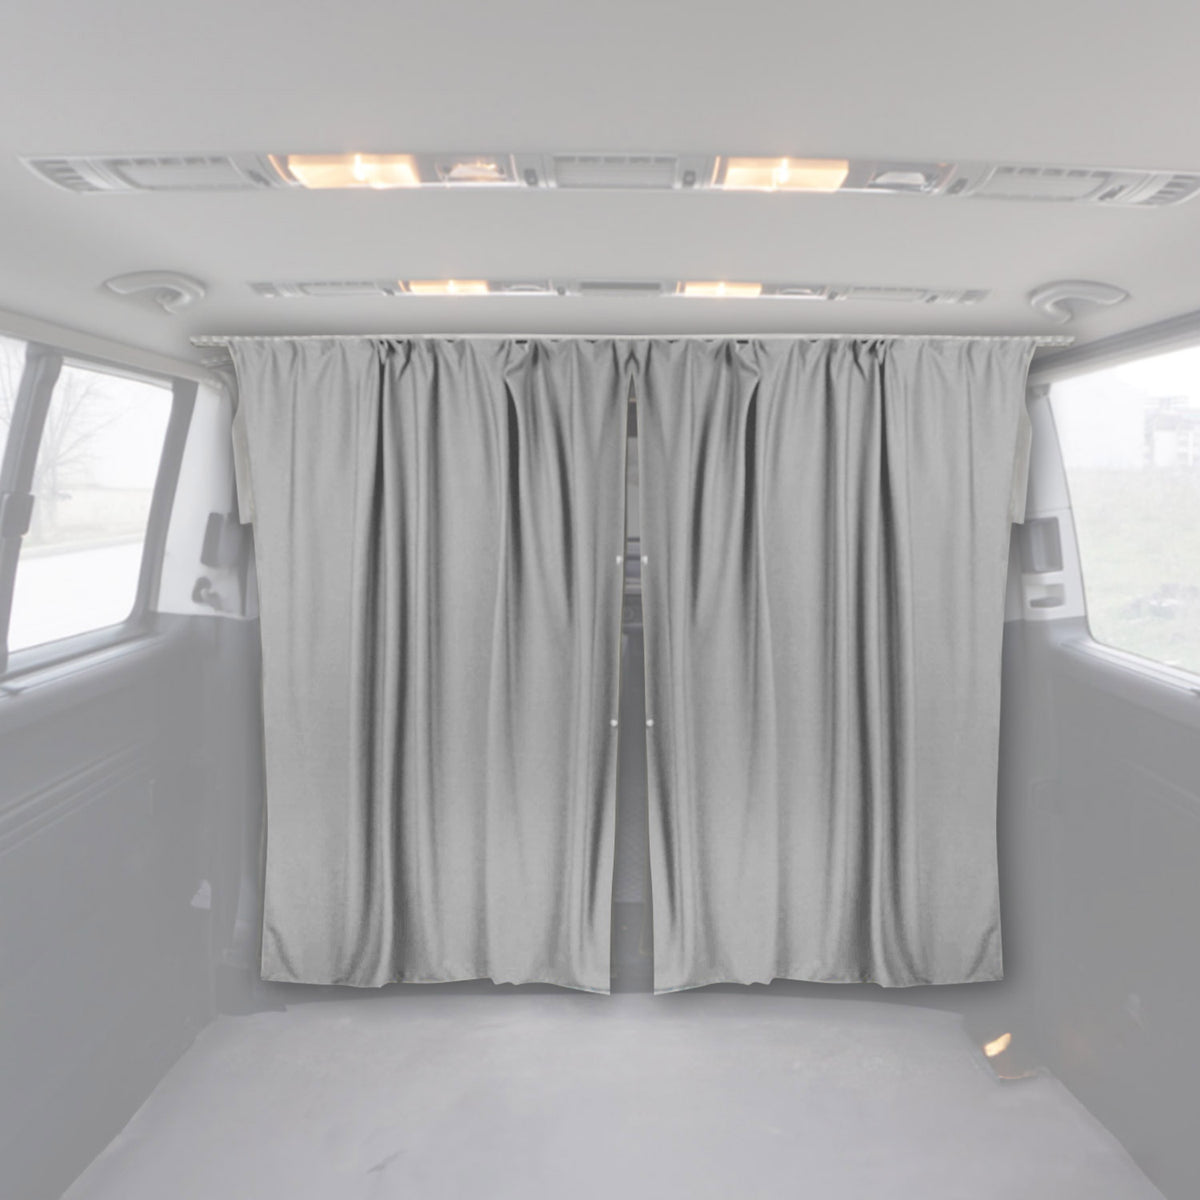 Fahrerhaus Führerhaus Gardinen Sonnenschutz für VW Caddy L1 L2 Grau 2tlg